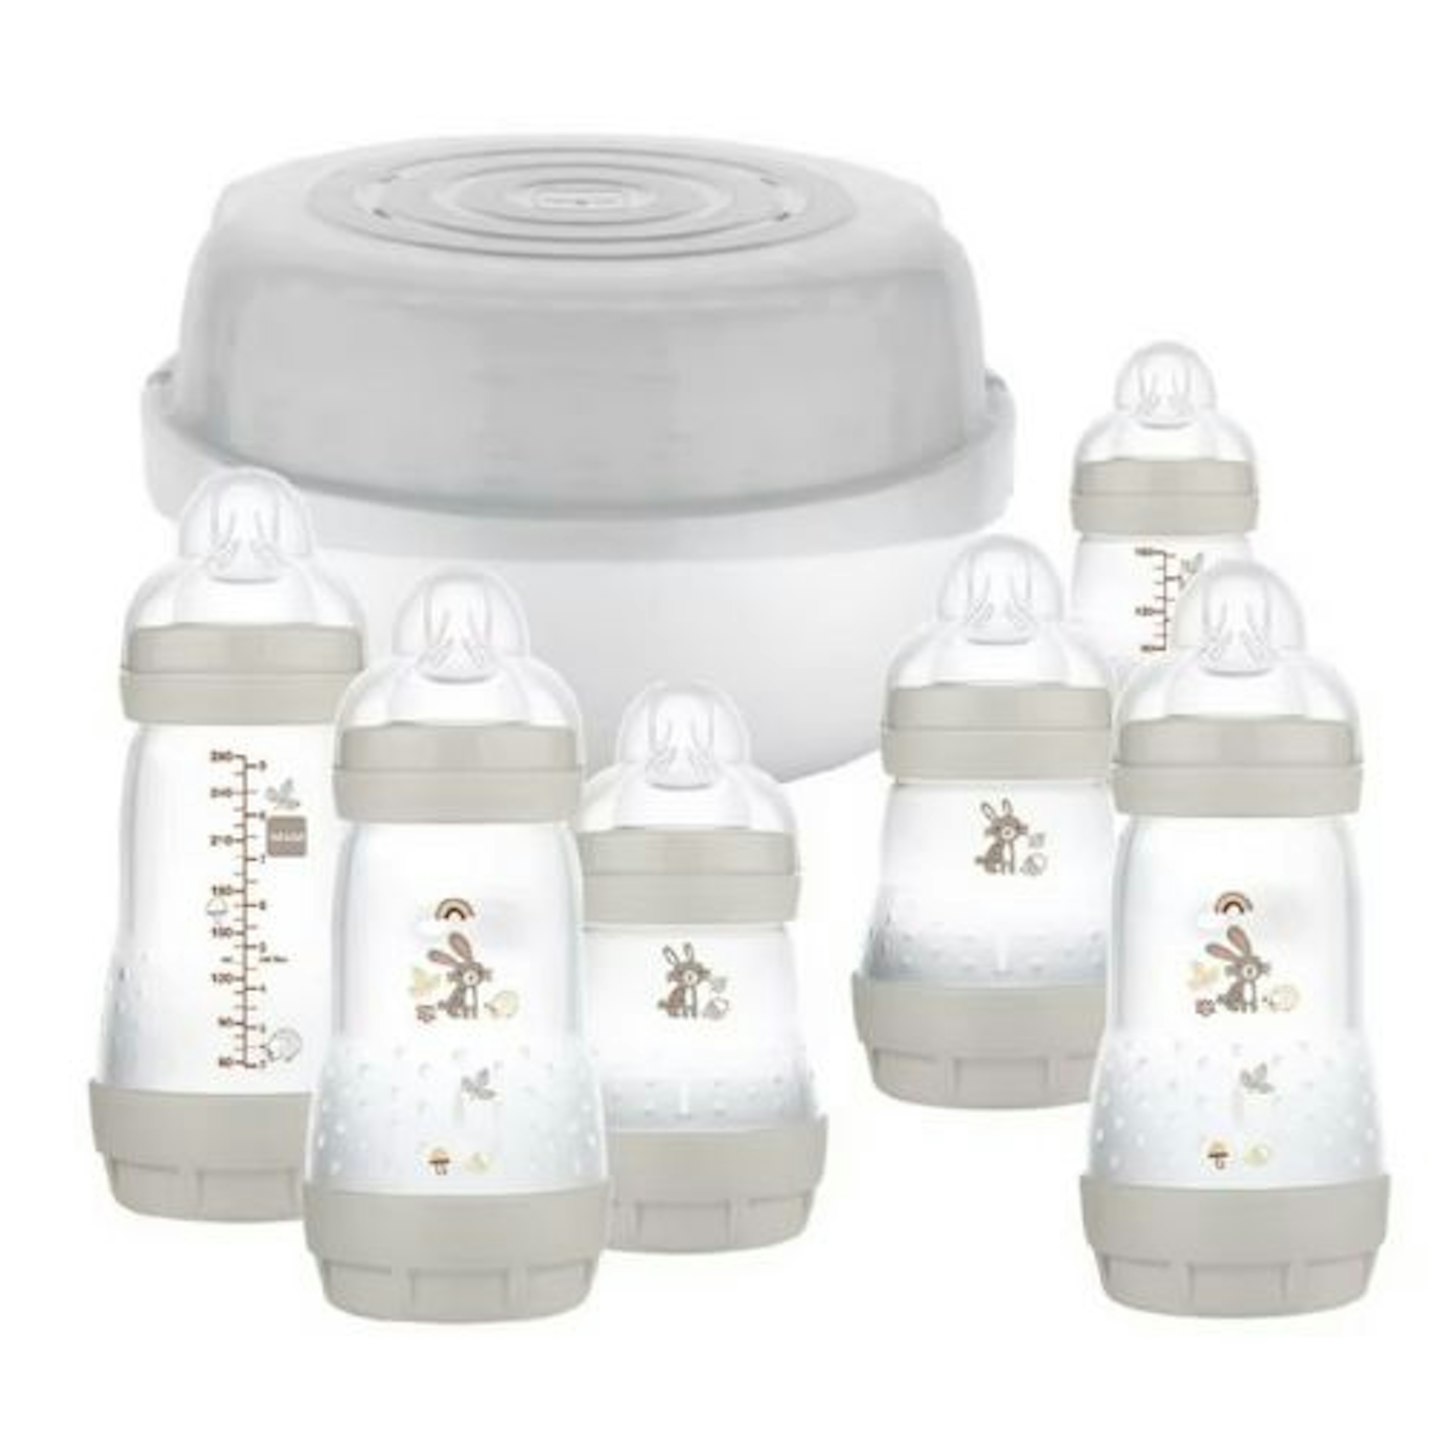 Best baby sterilisers MAM Easy Start Microwave Bottle Steriliser Set 